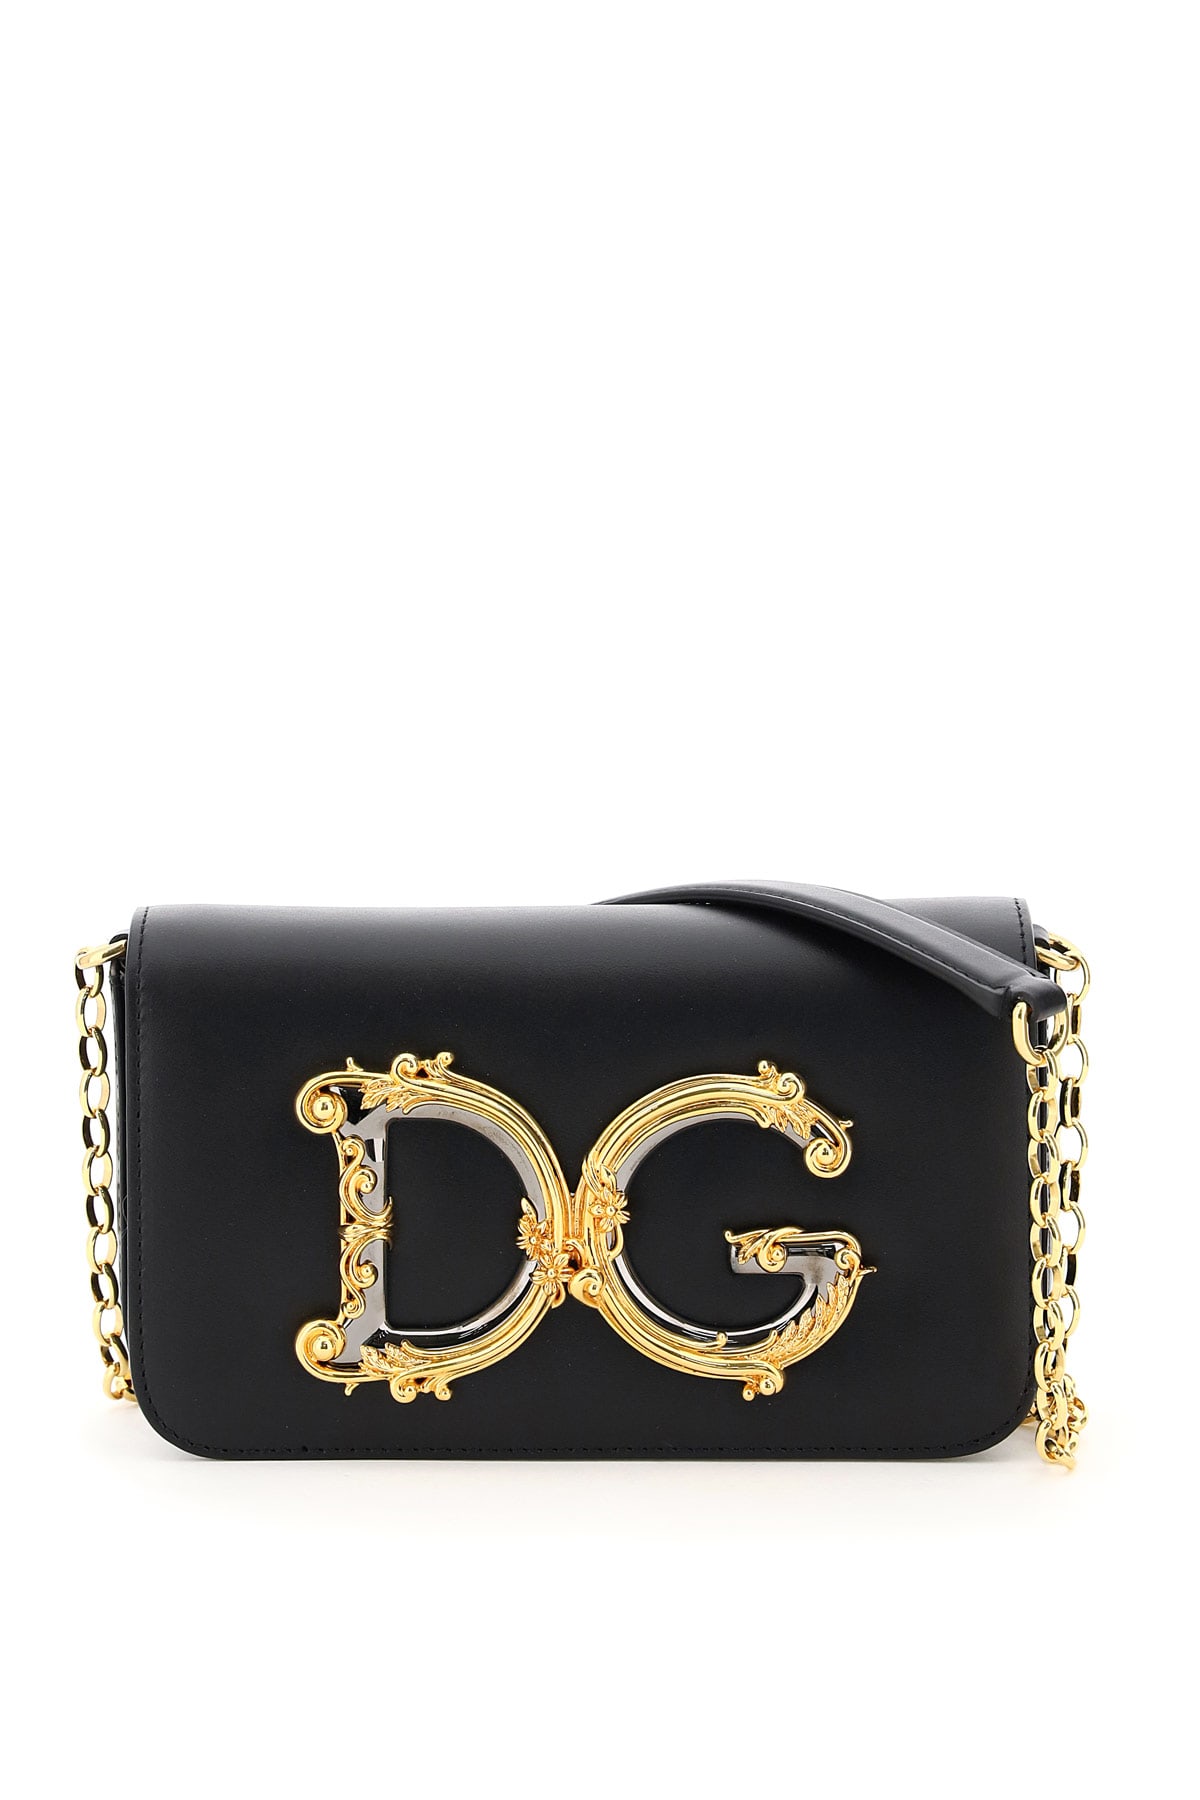 Dolce & Gabbana Dg Girl Mini Bag Barocco